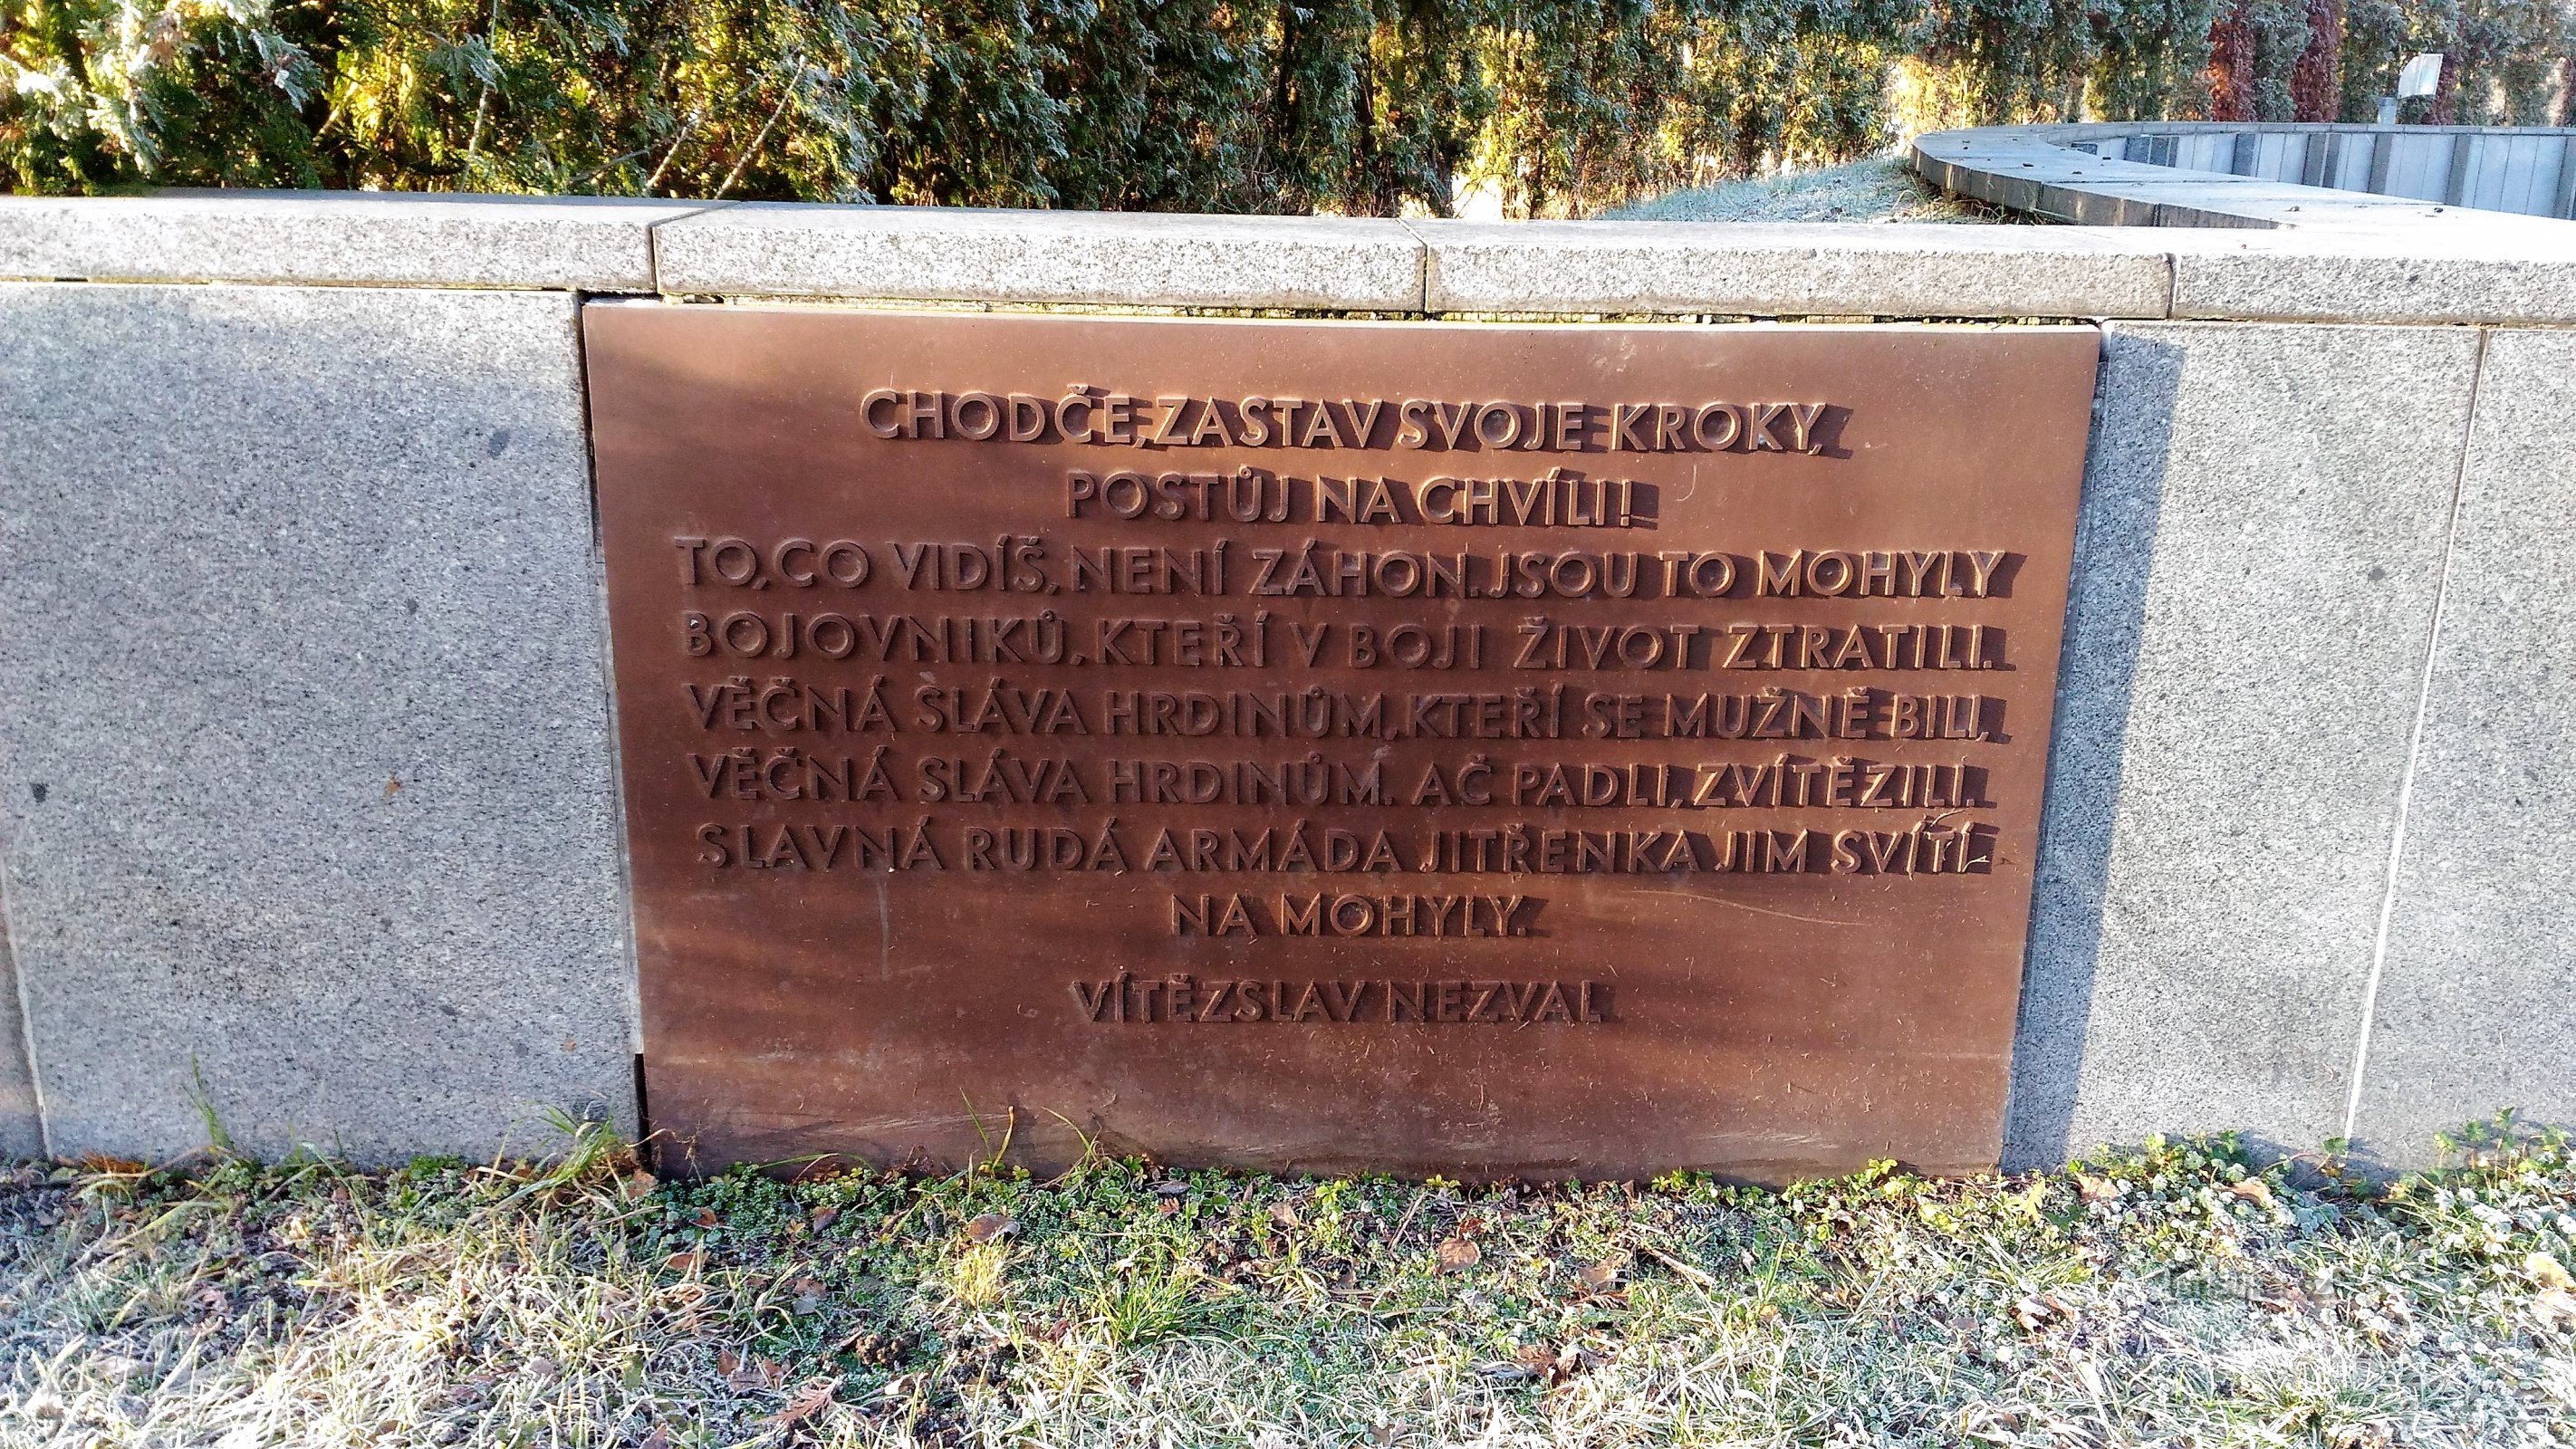 Kyrkogård för sovjetiska soldater i Terezín.